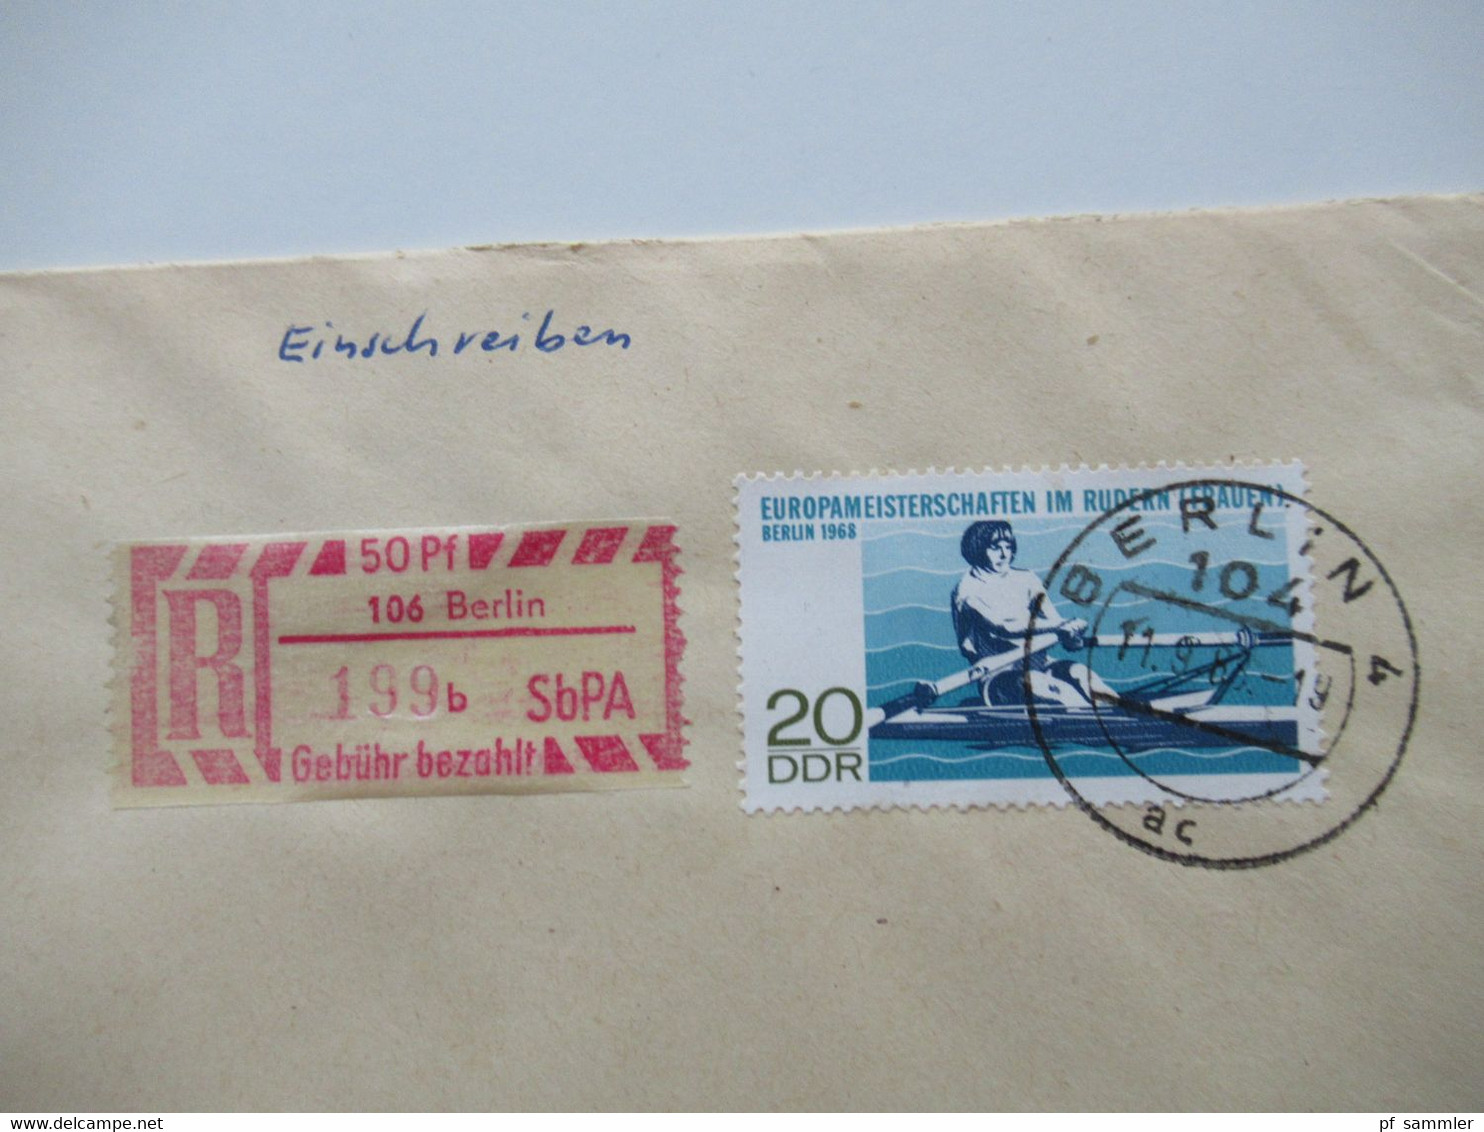 DDR 1968 Einschreiben / Reko Belege SbPA (Selbstbucher Postamt) Berlin Einschreibemarke Nr.2 insgesamt 13 Belege